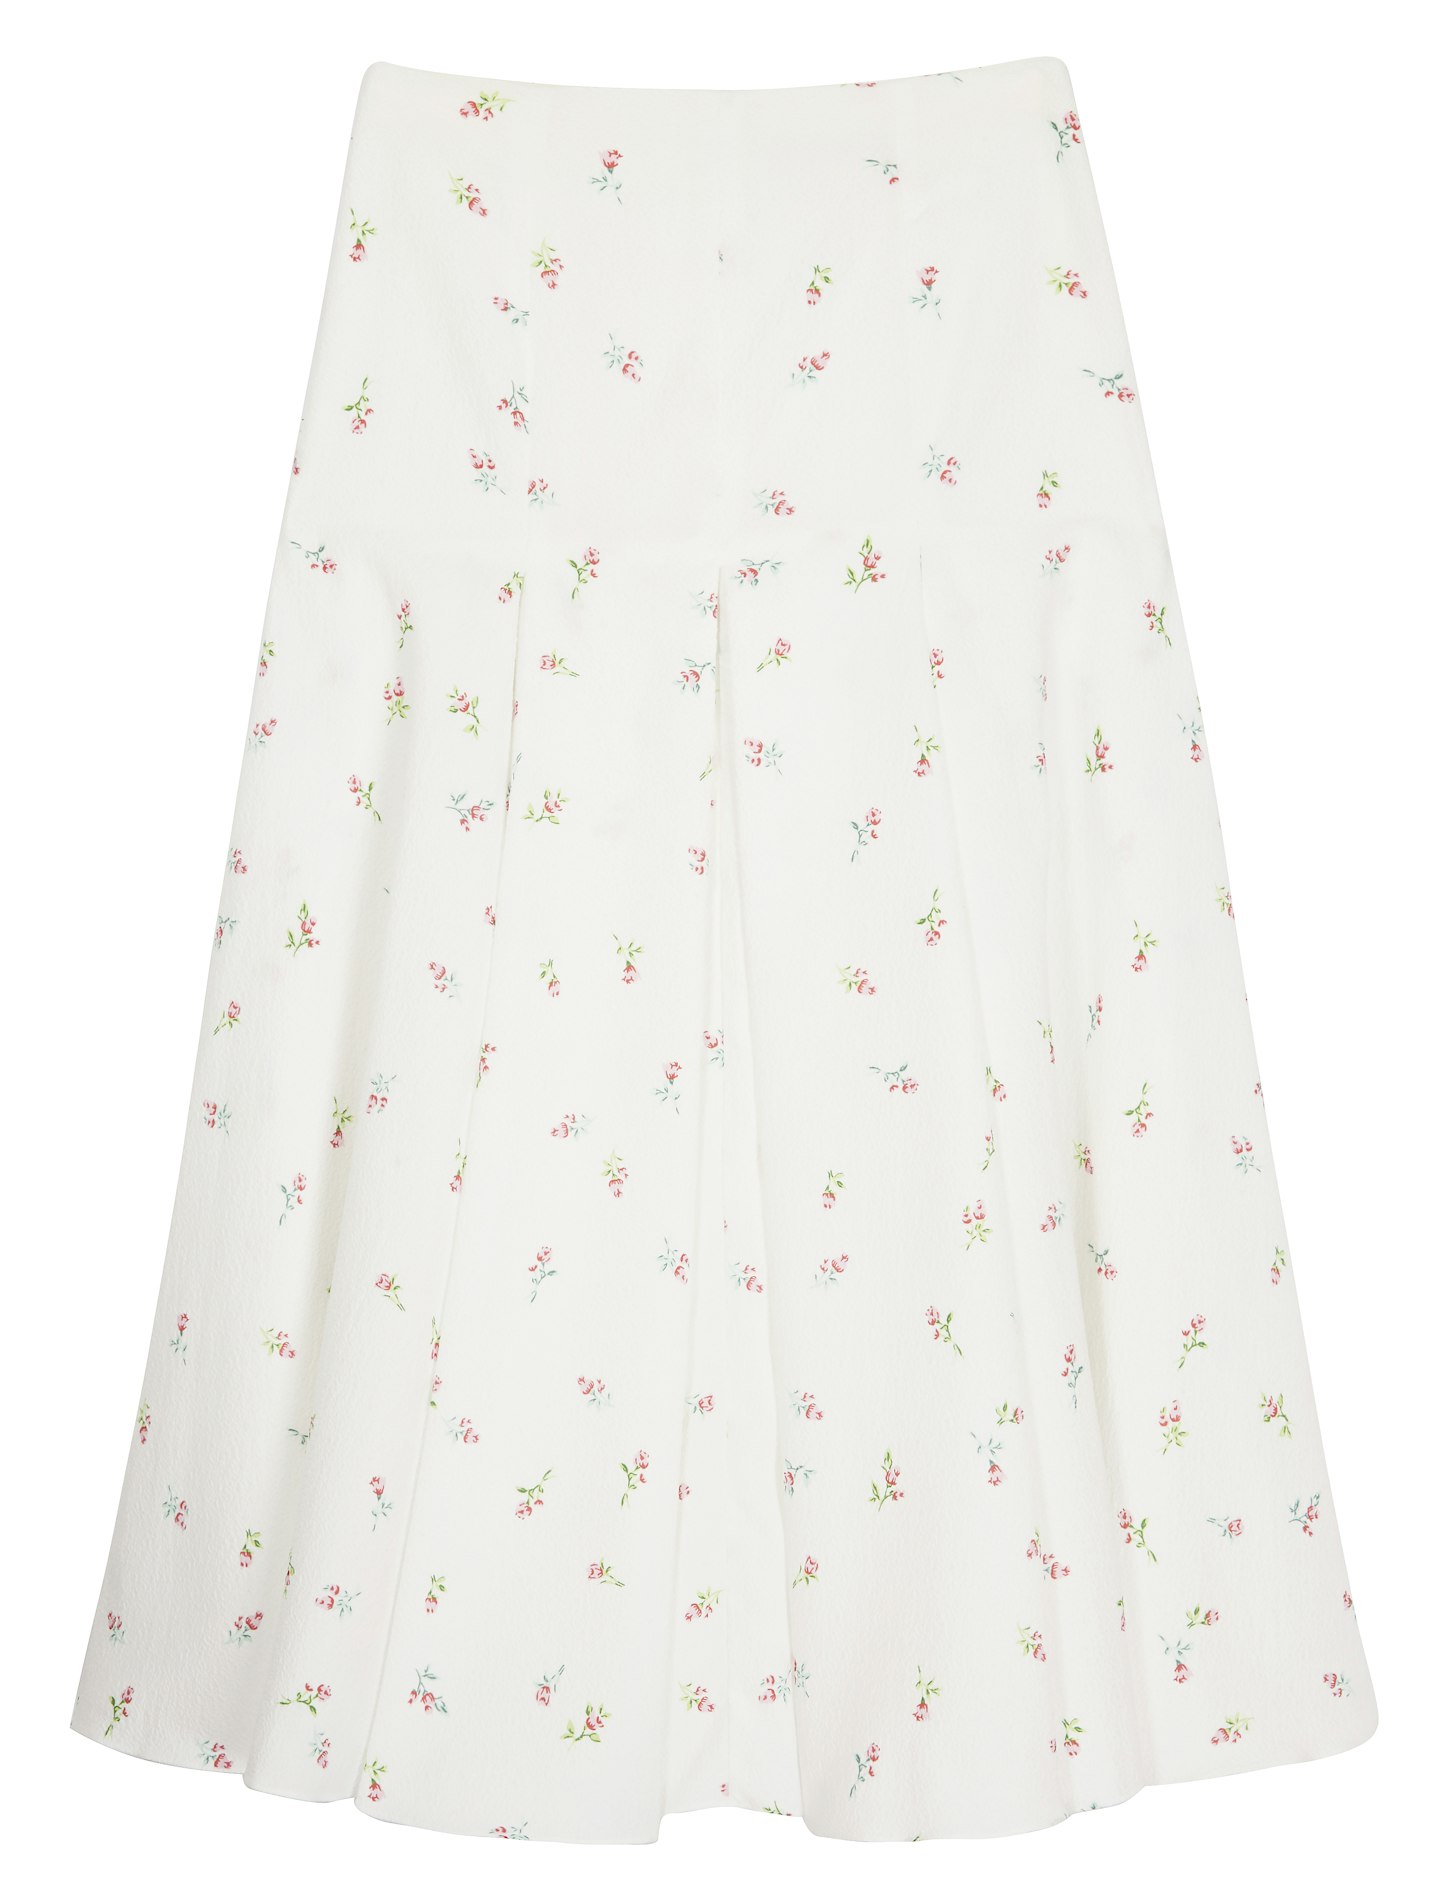 Mercia Printed Skirt, £610